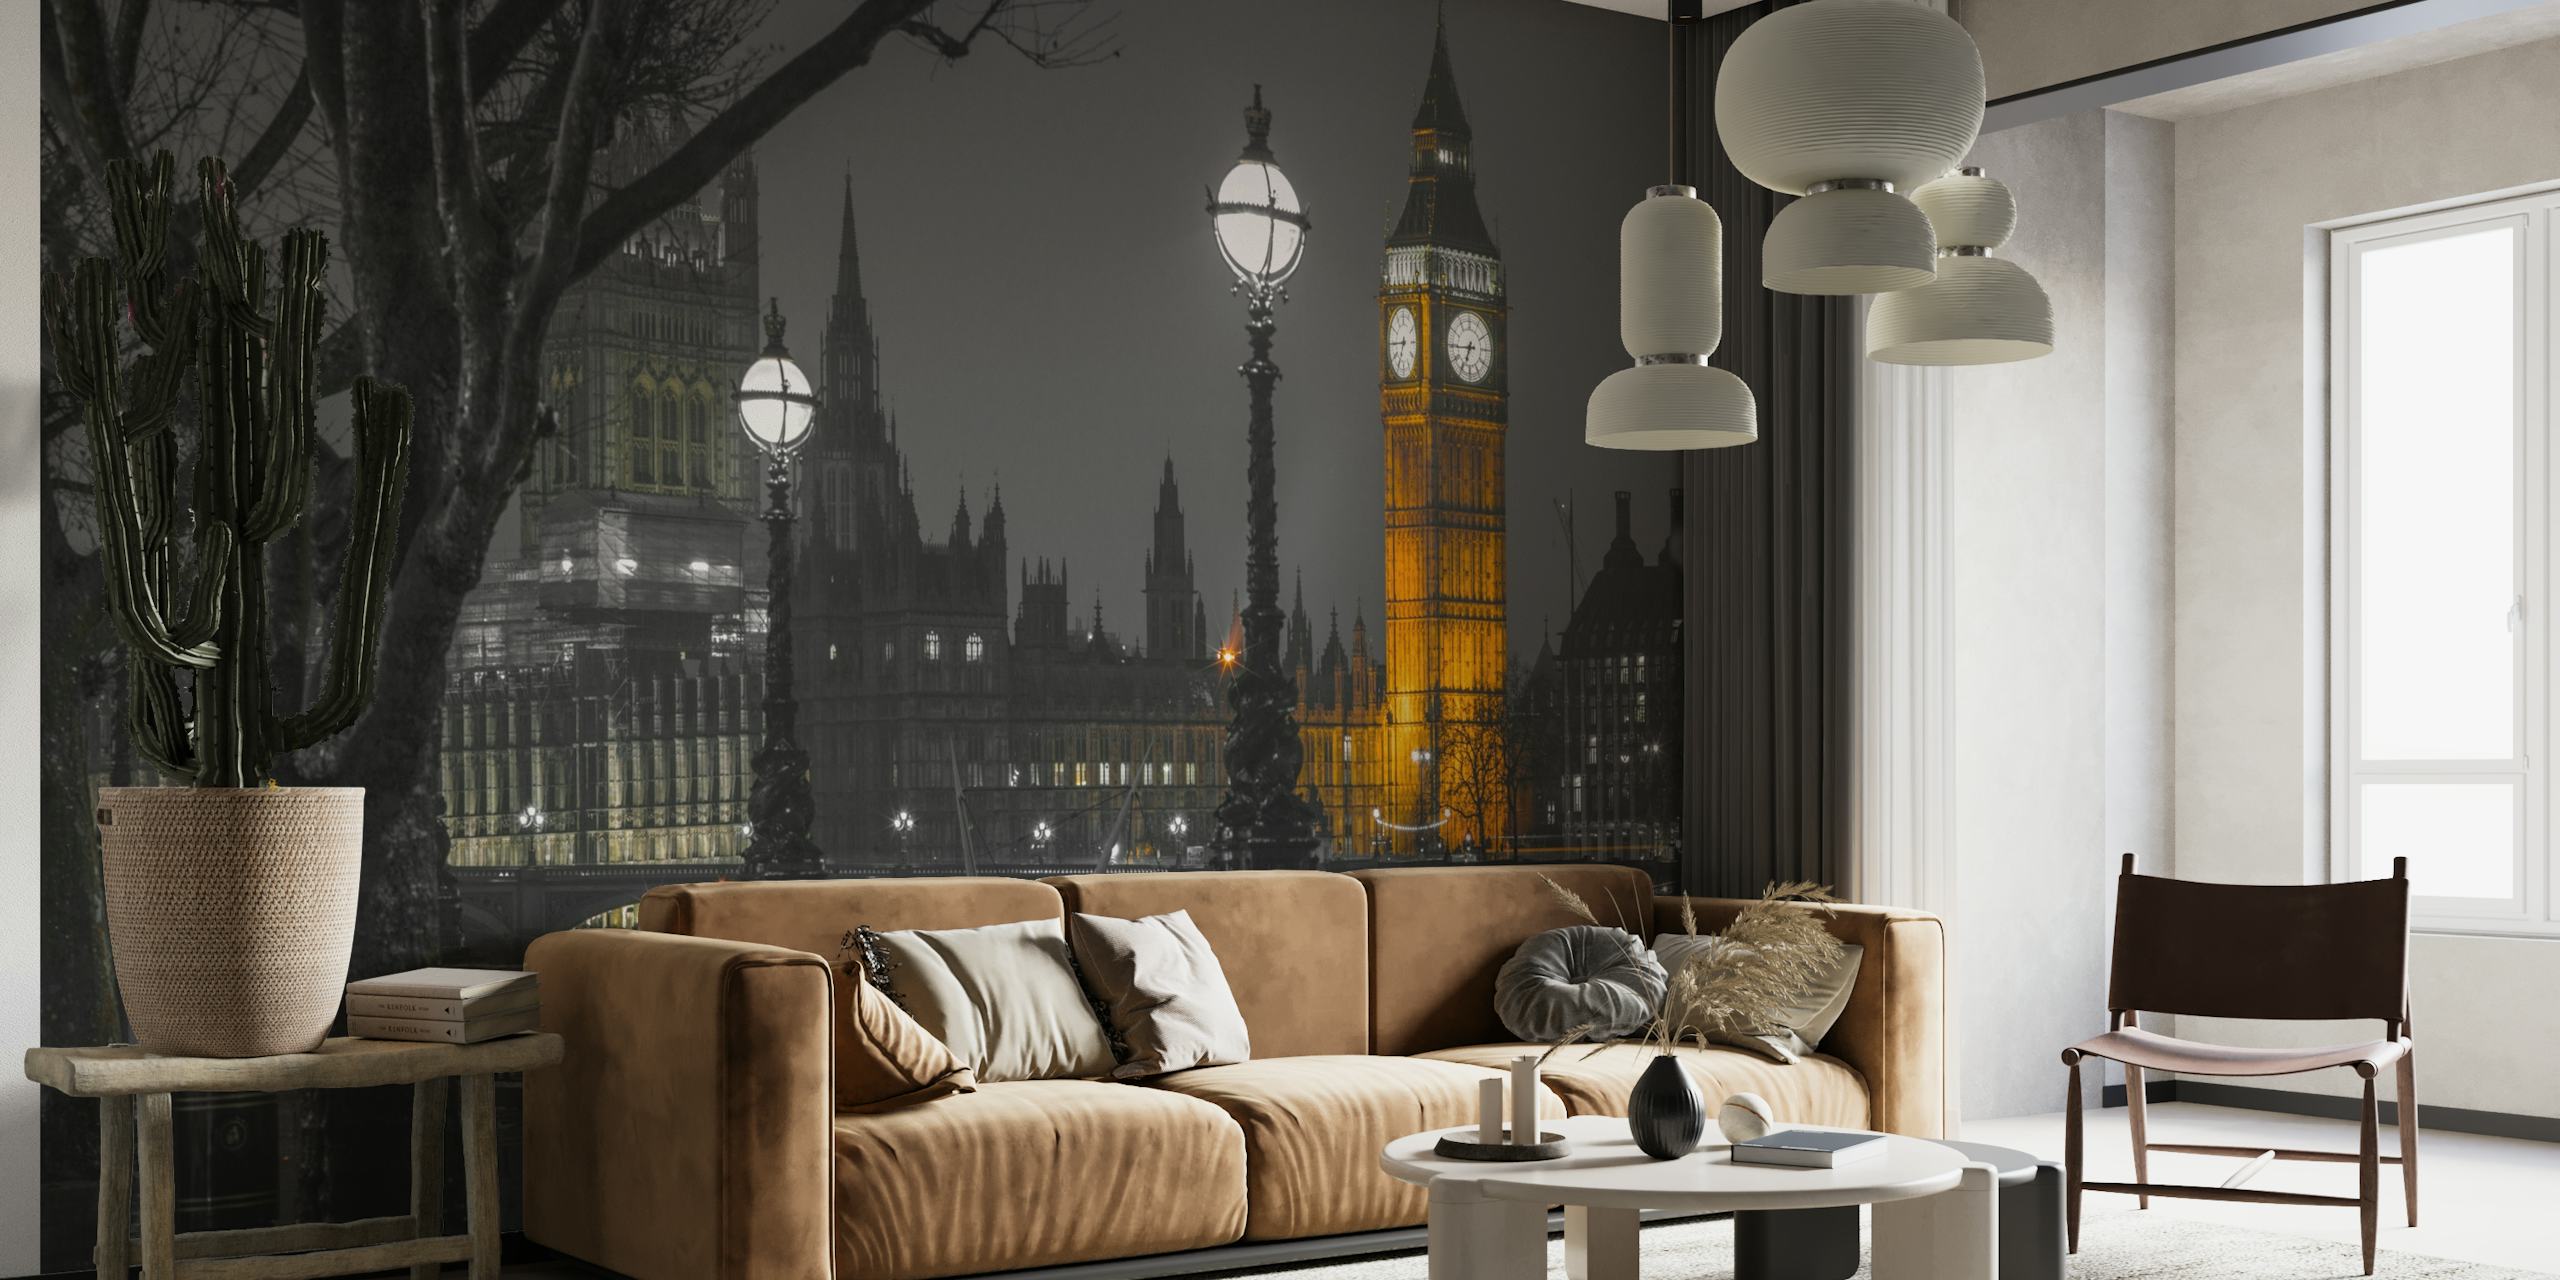 Svart-hvitt veggmaleri av Londons bybilde i skumringen med Elizabeth Tower opplyst